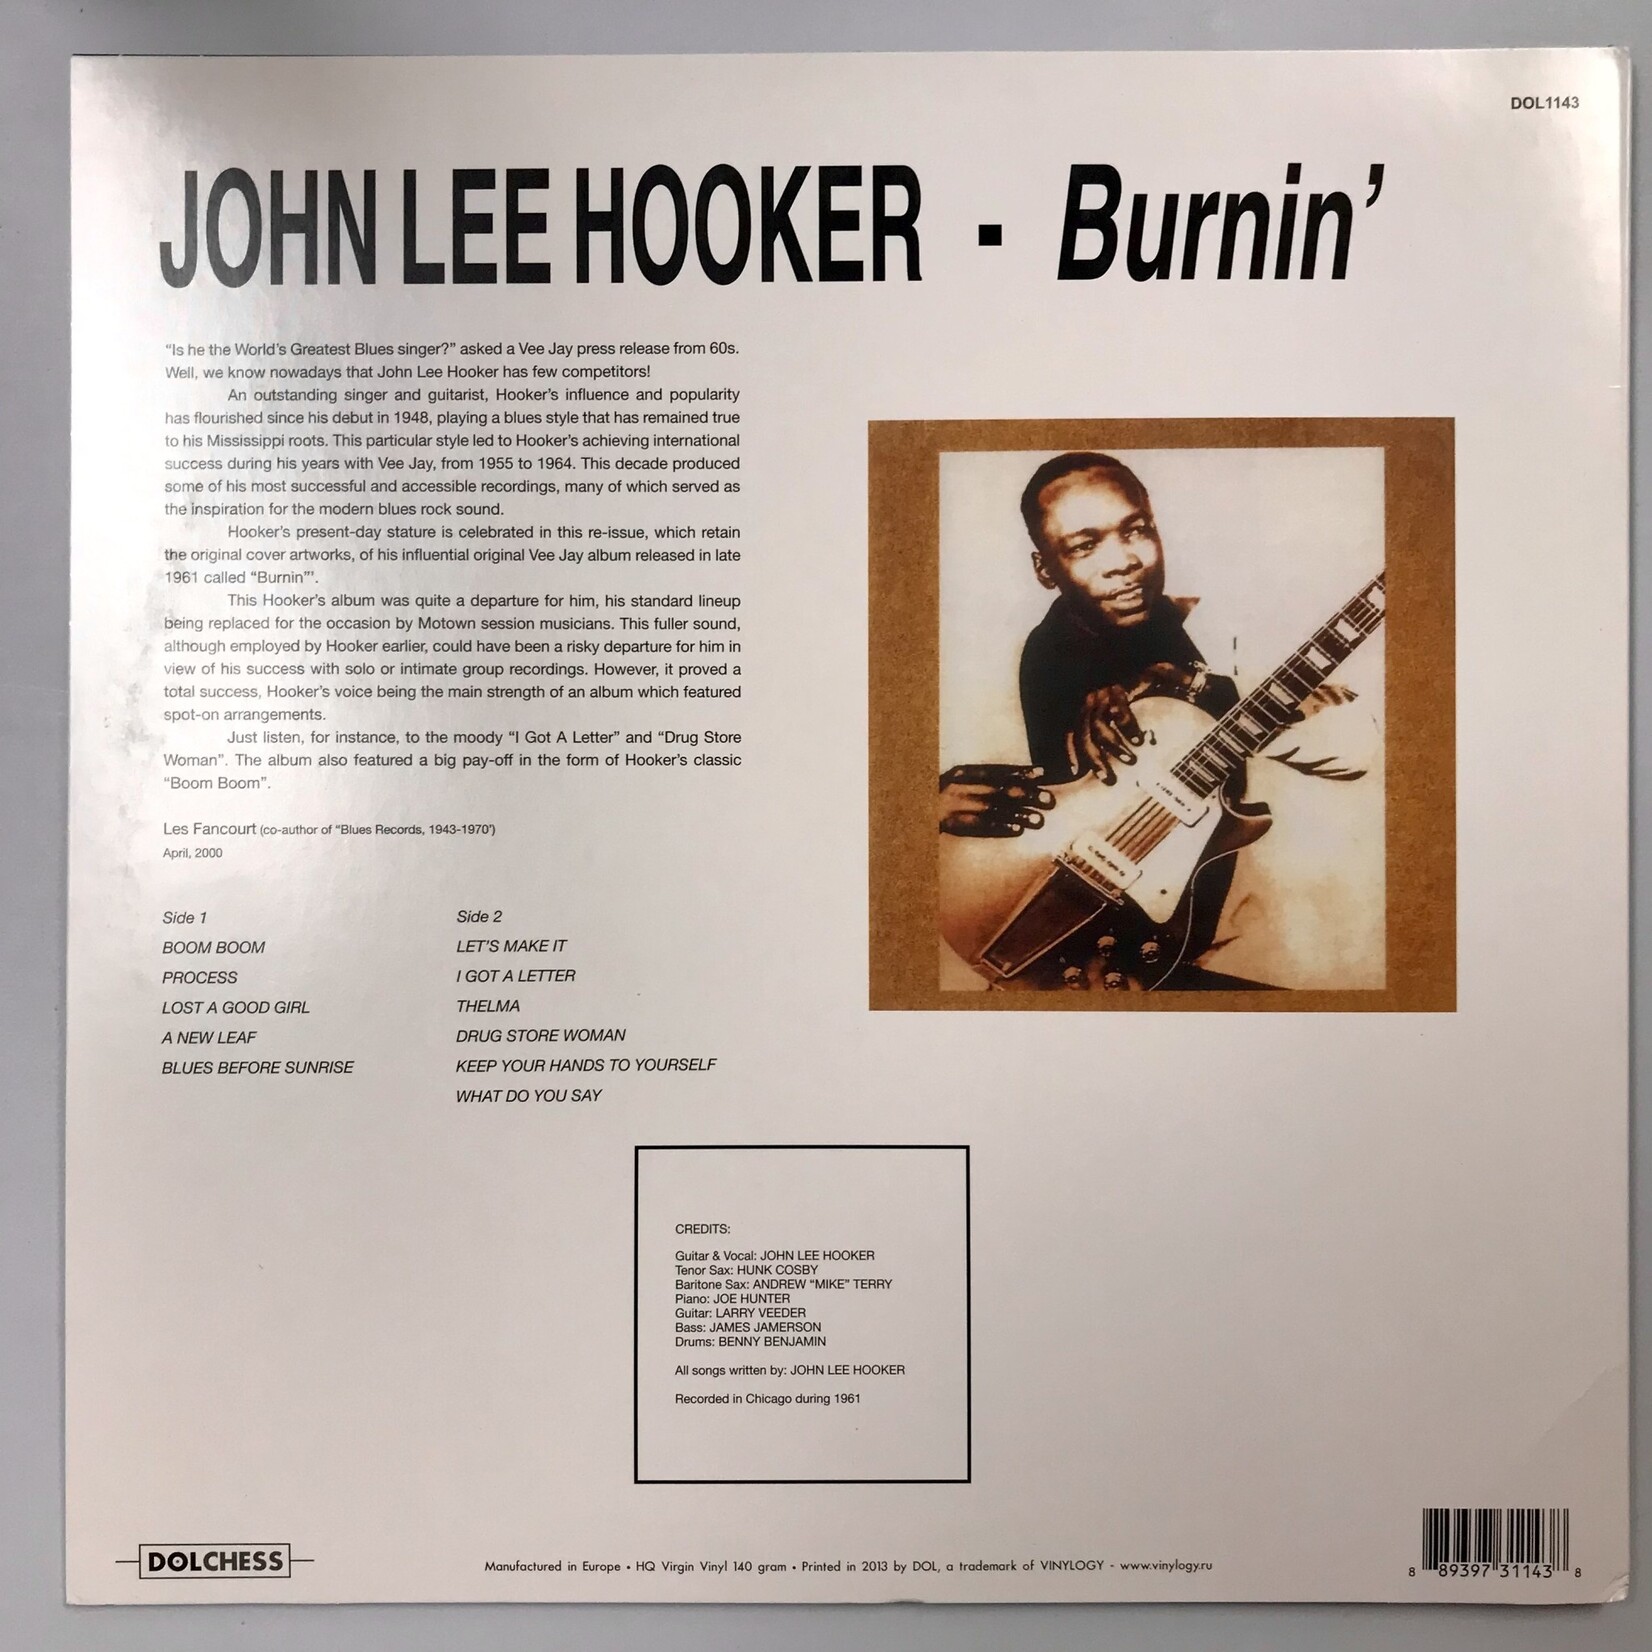 John Lee Hooker - Burnin’ - Vinyl LP (USED)